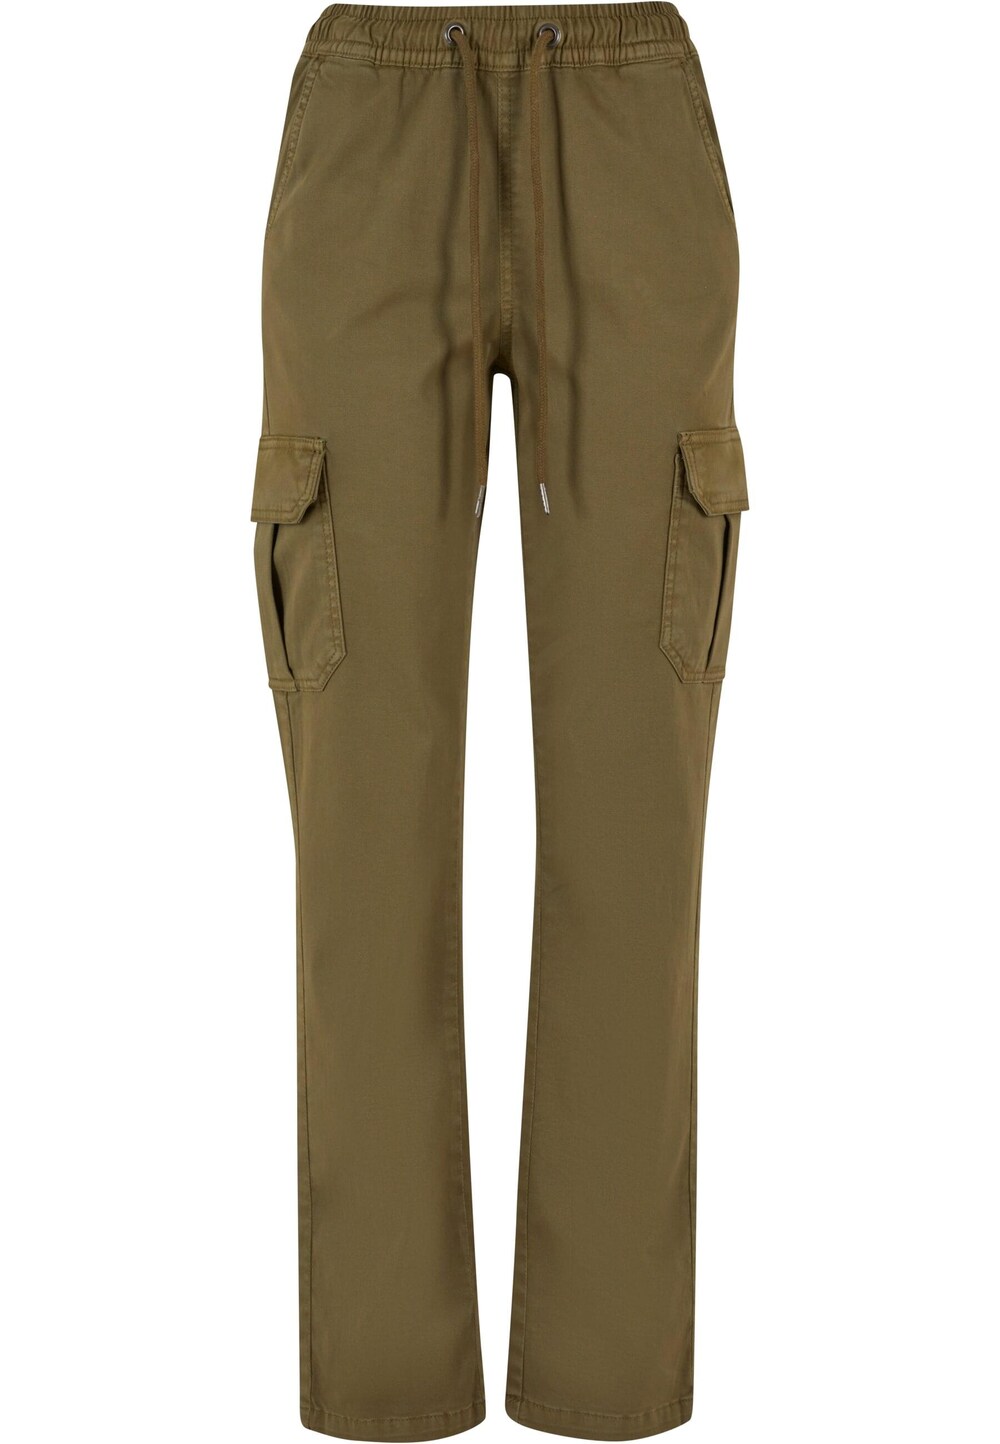 Обычные брюки-карго Urban Classics, оливковое зауженные брюки карго urban classics оливковое